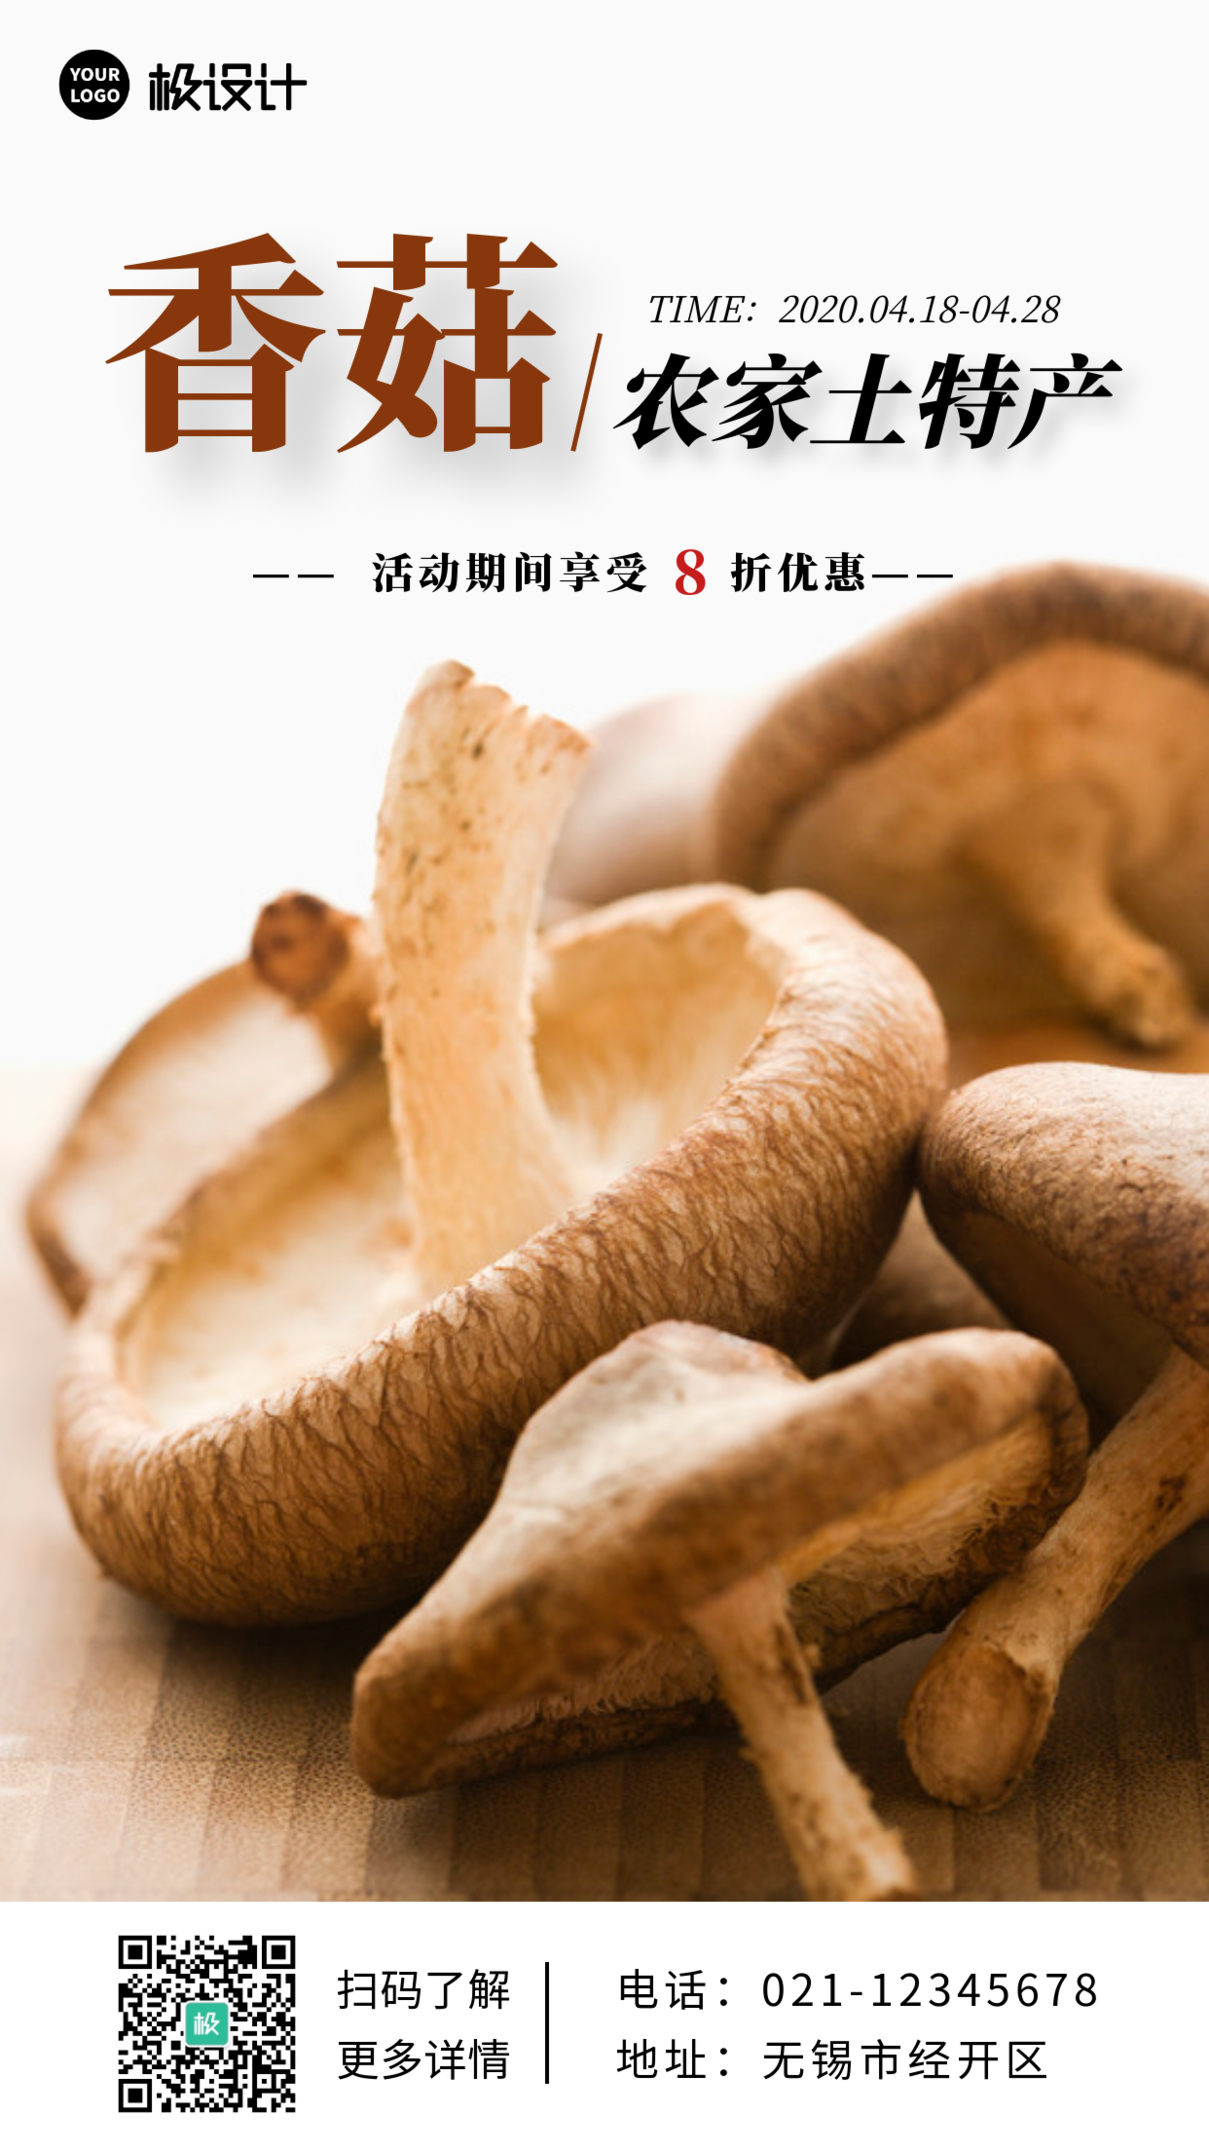 土特产香菇白色配图简约大气宣传营销海报